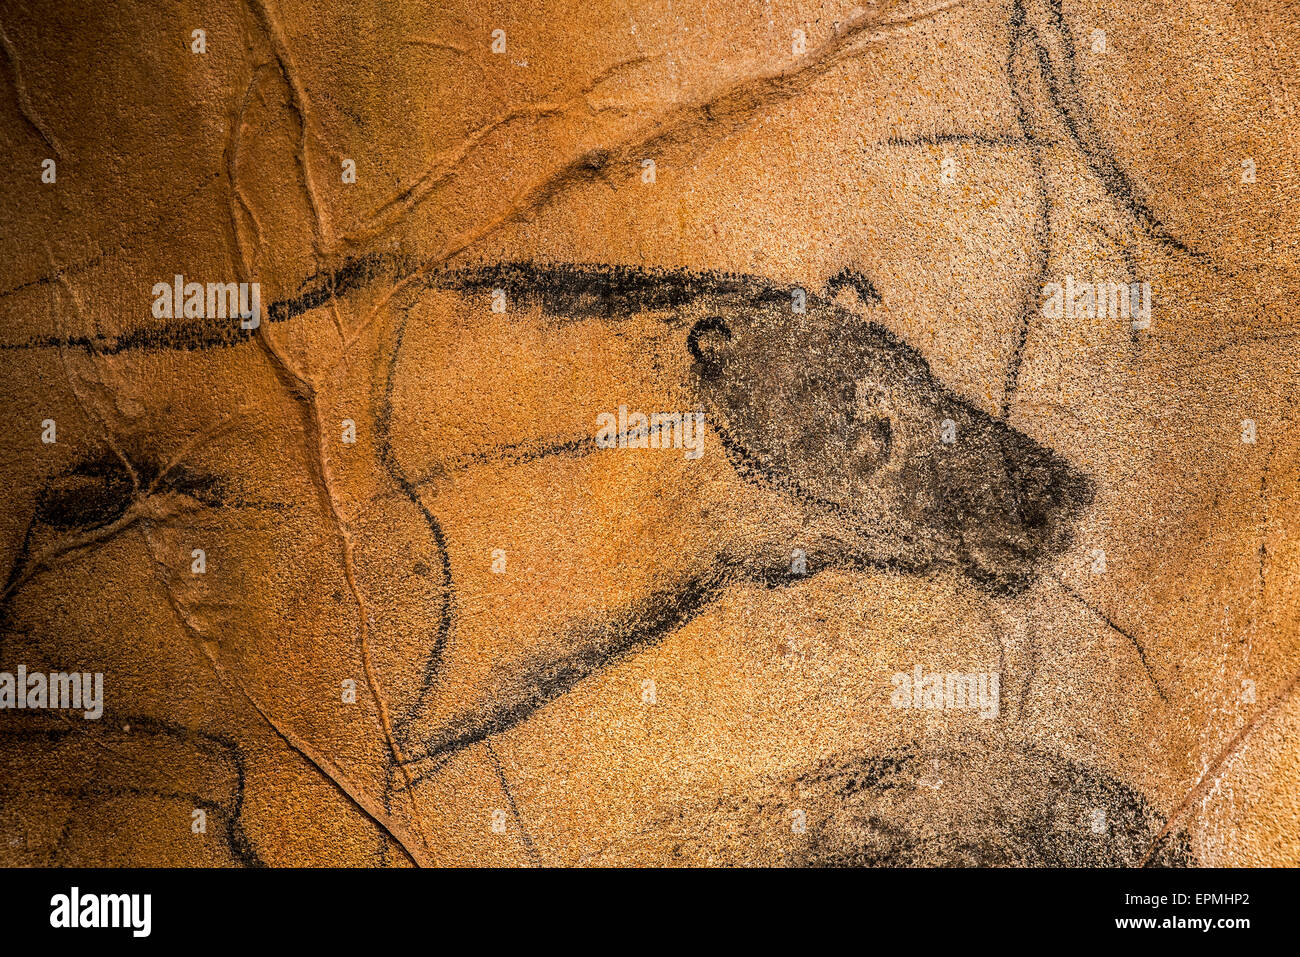 Réplique de peintures rupestres préhistoriques de la grotte Chauvet, Grotte Chauvet-Pont-d'Arc, Ardèche, France, montrant disparue lion des cavernes Banque D'Images